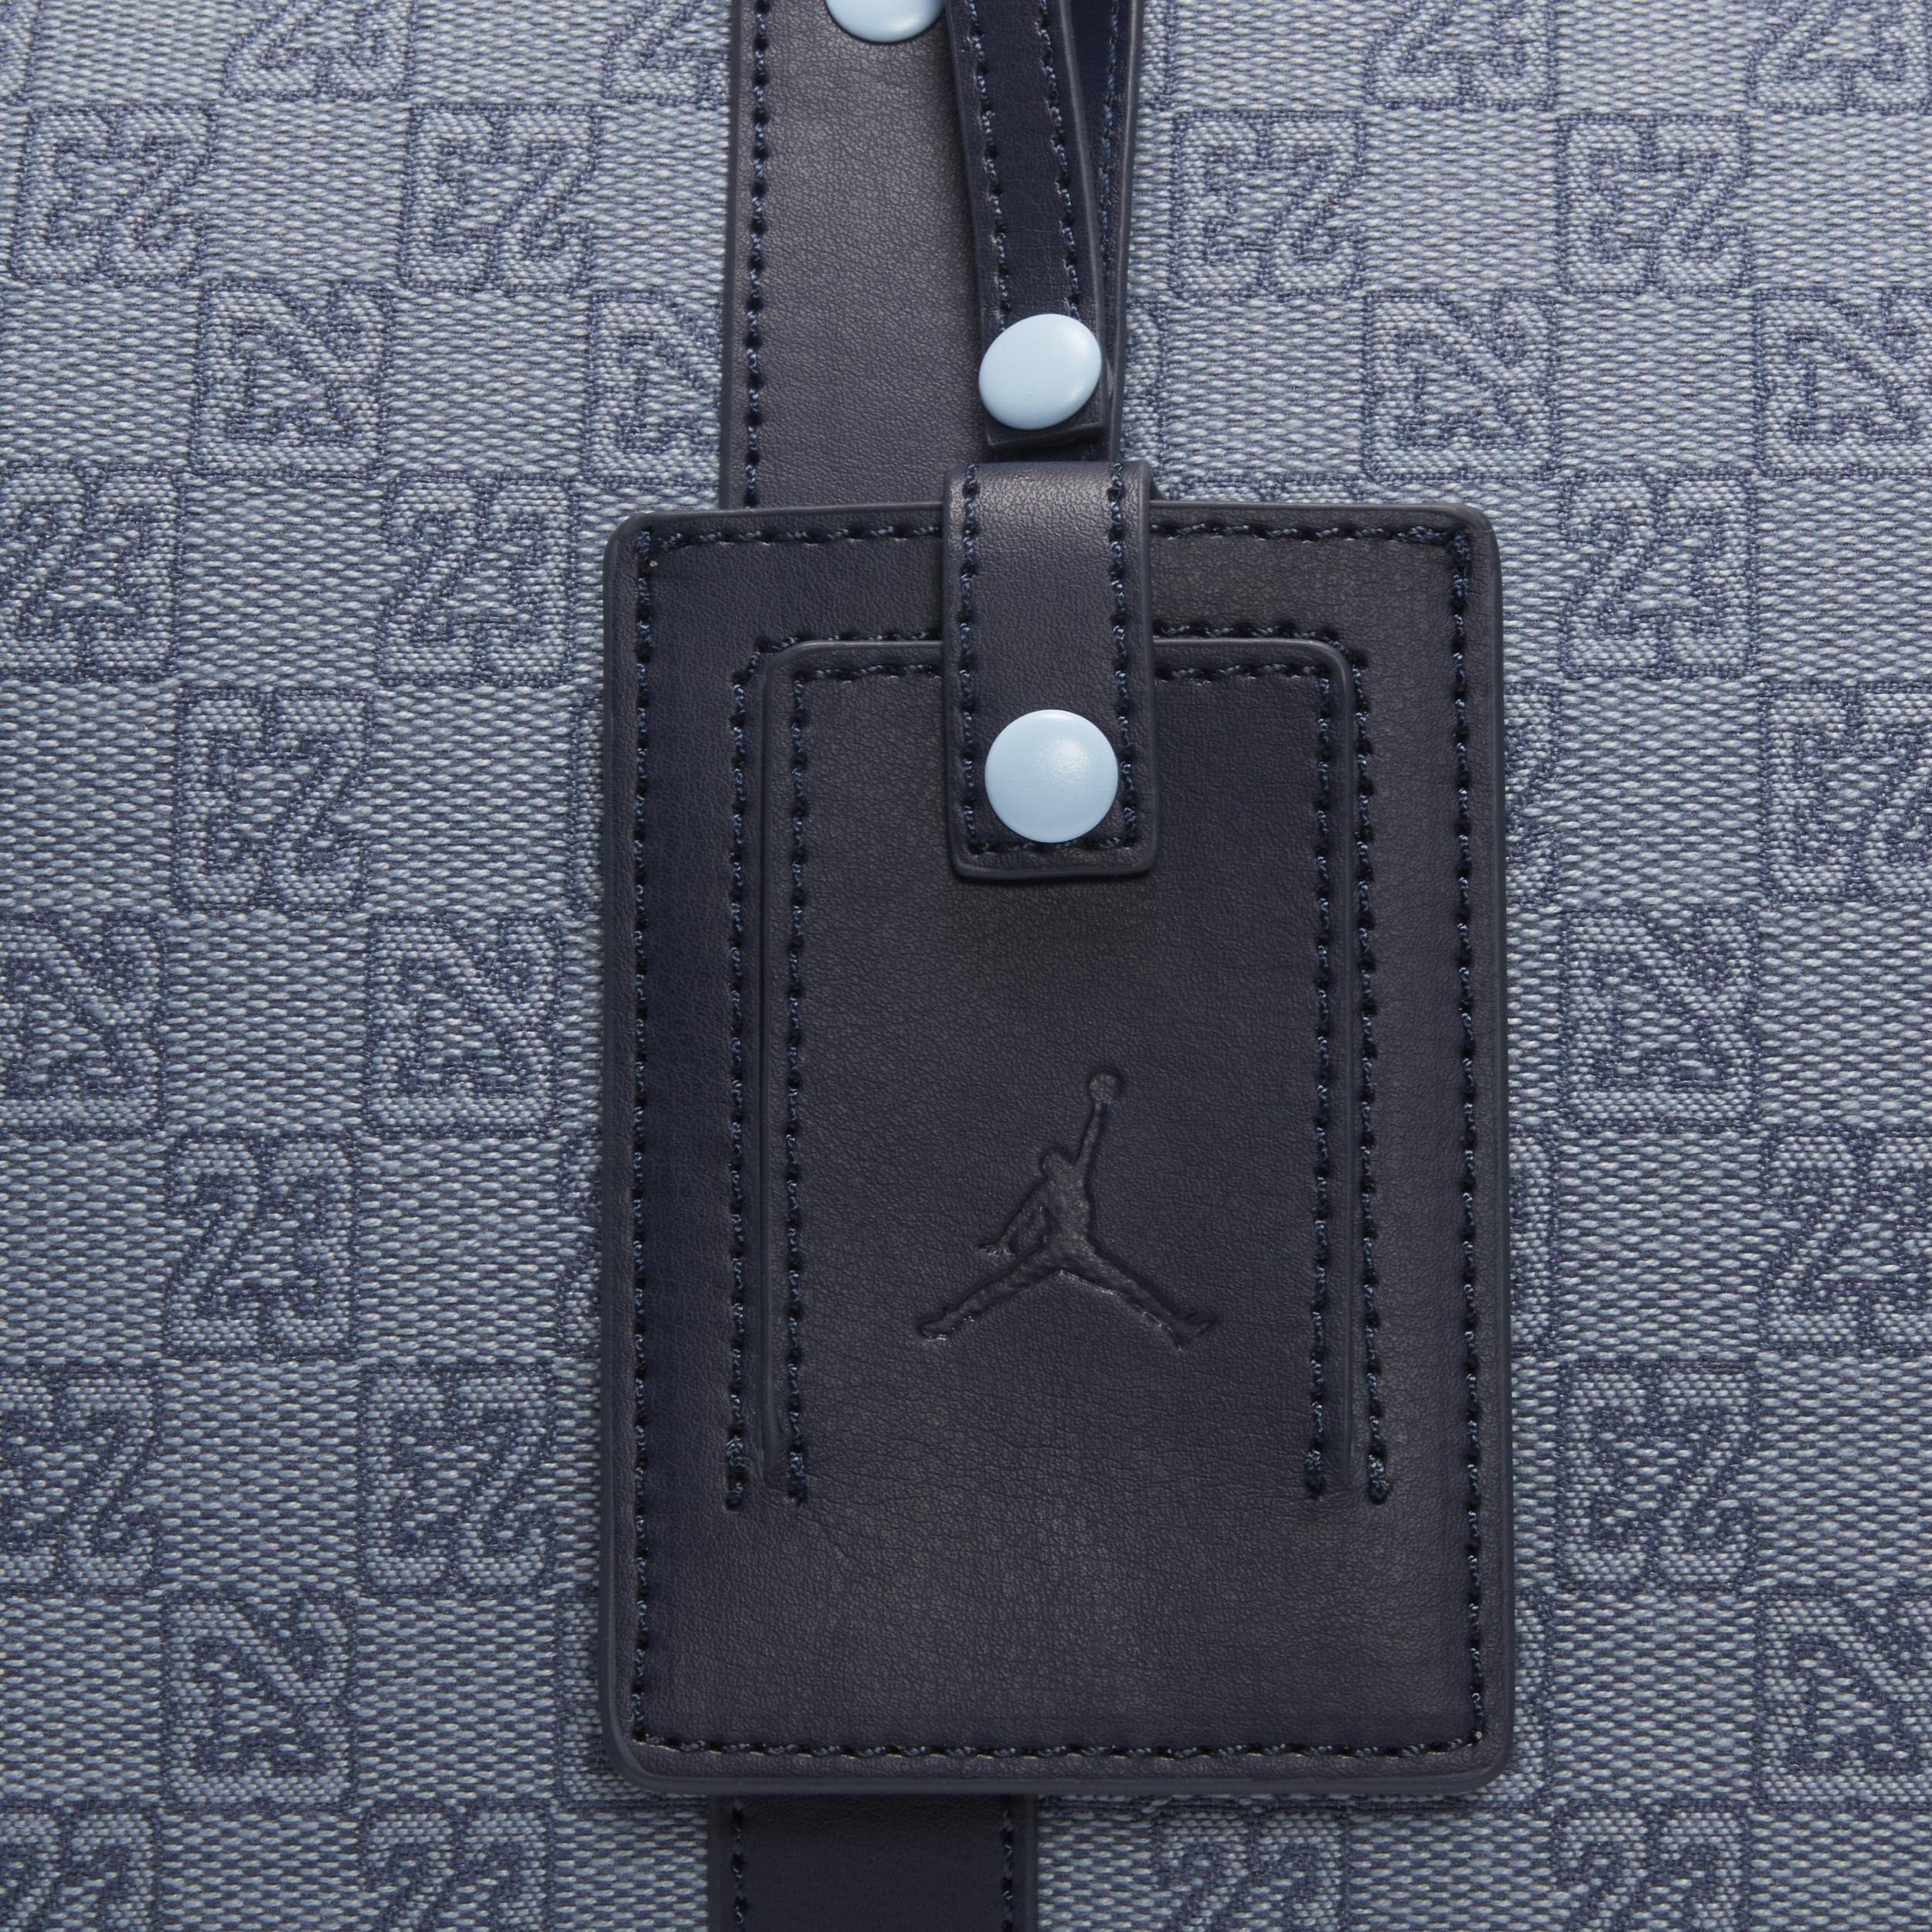 Jordan Monogram Duffle Bag Duffle Bag (25L) | MB0759-M0S Product Image